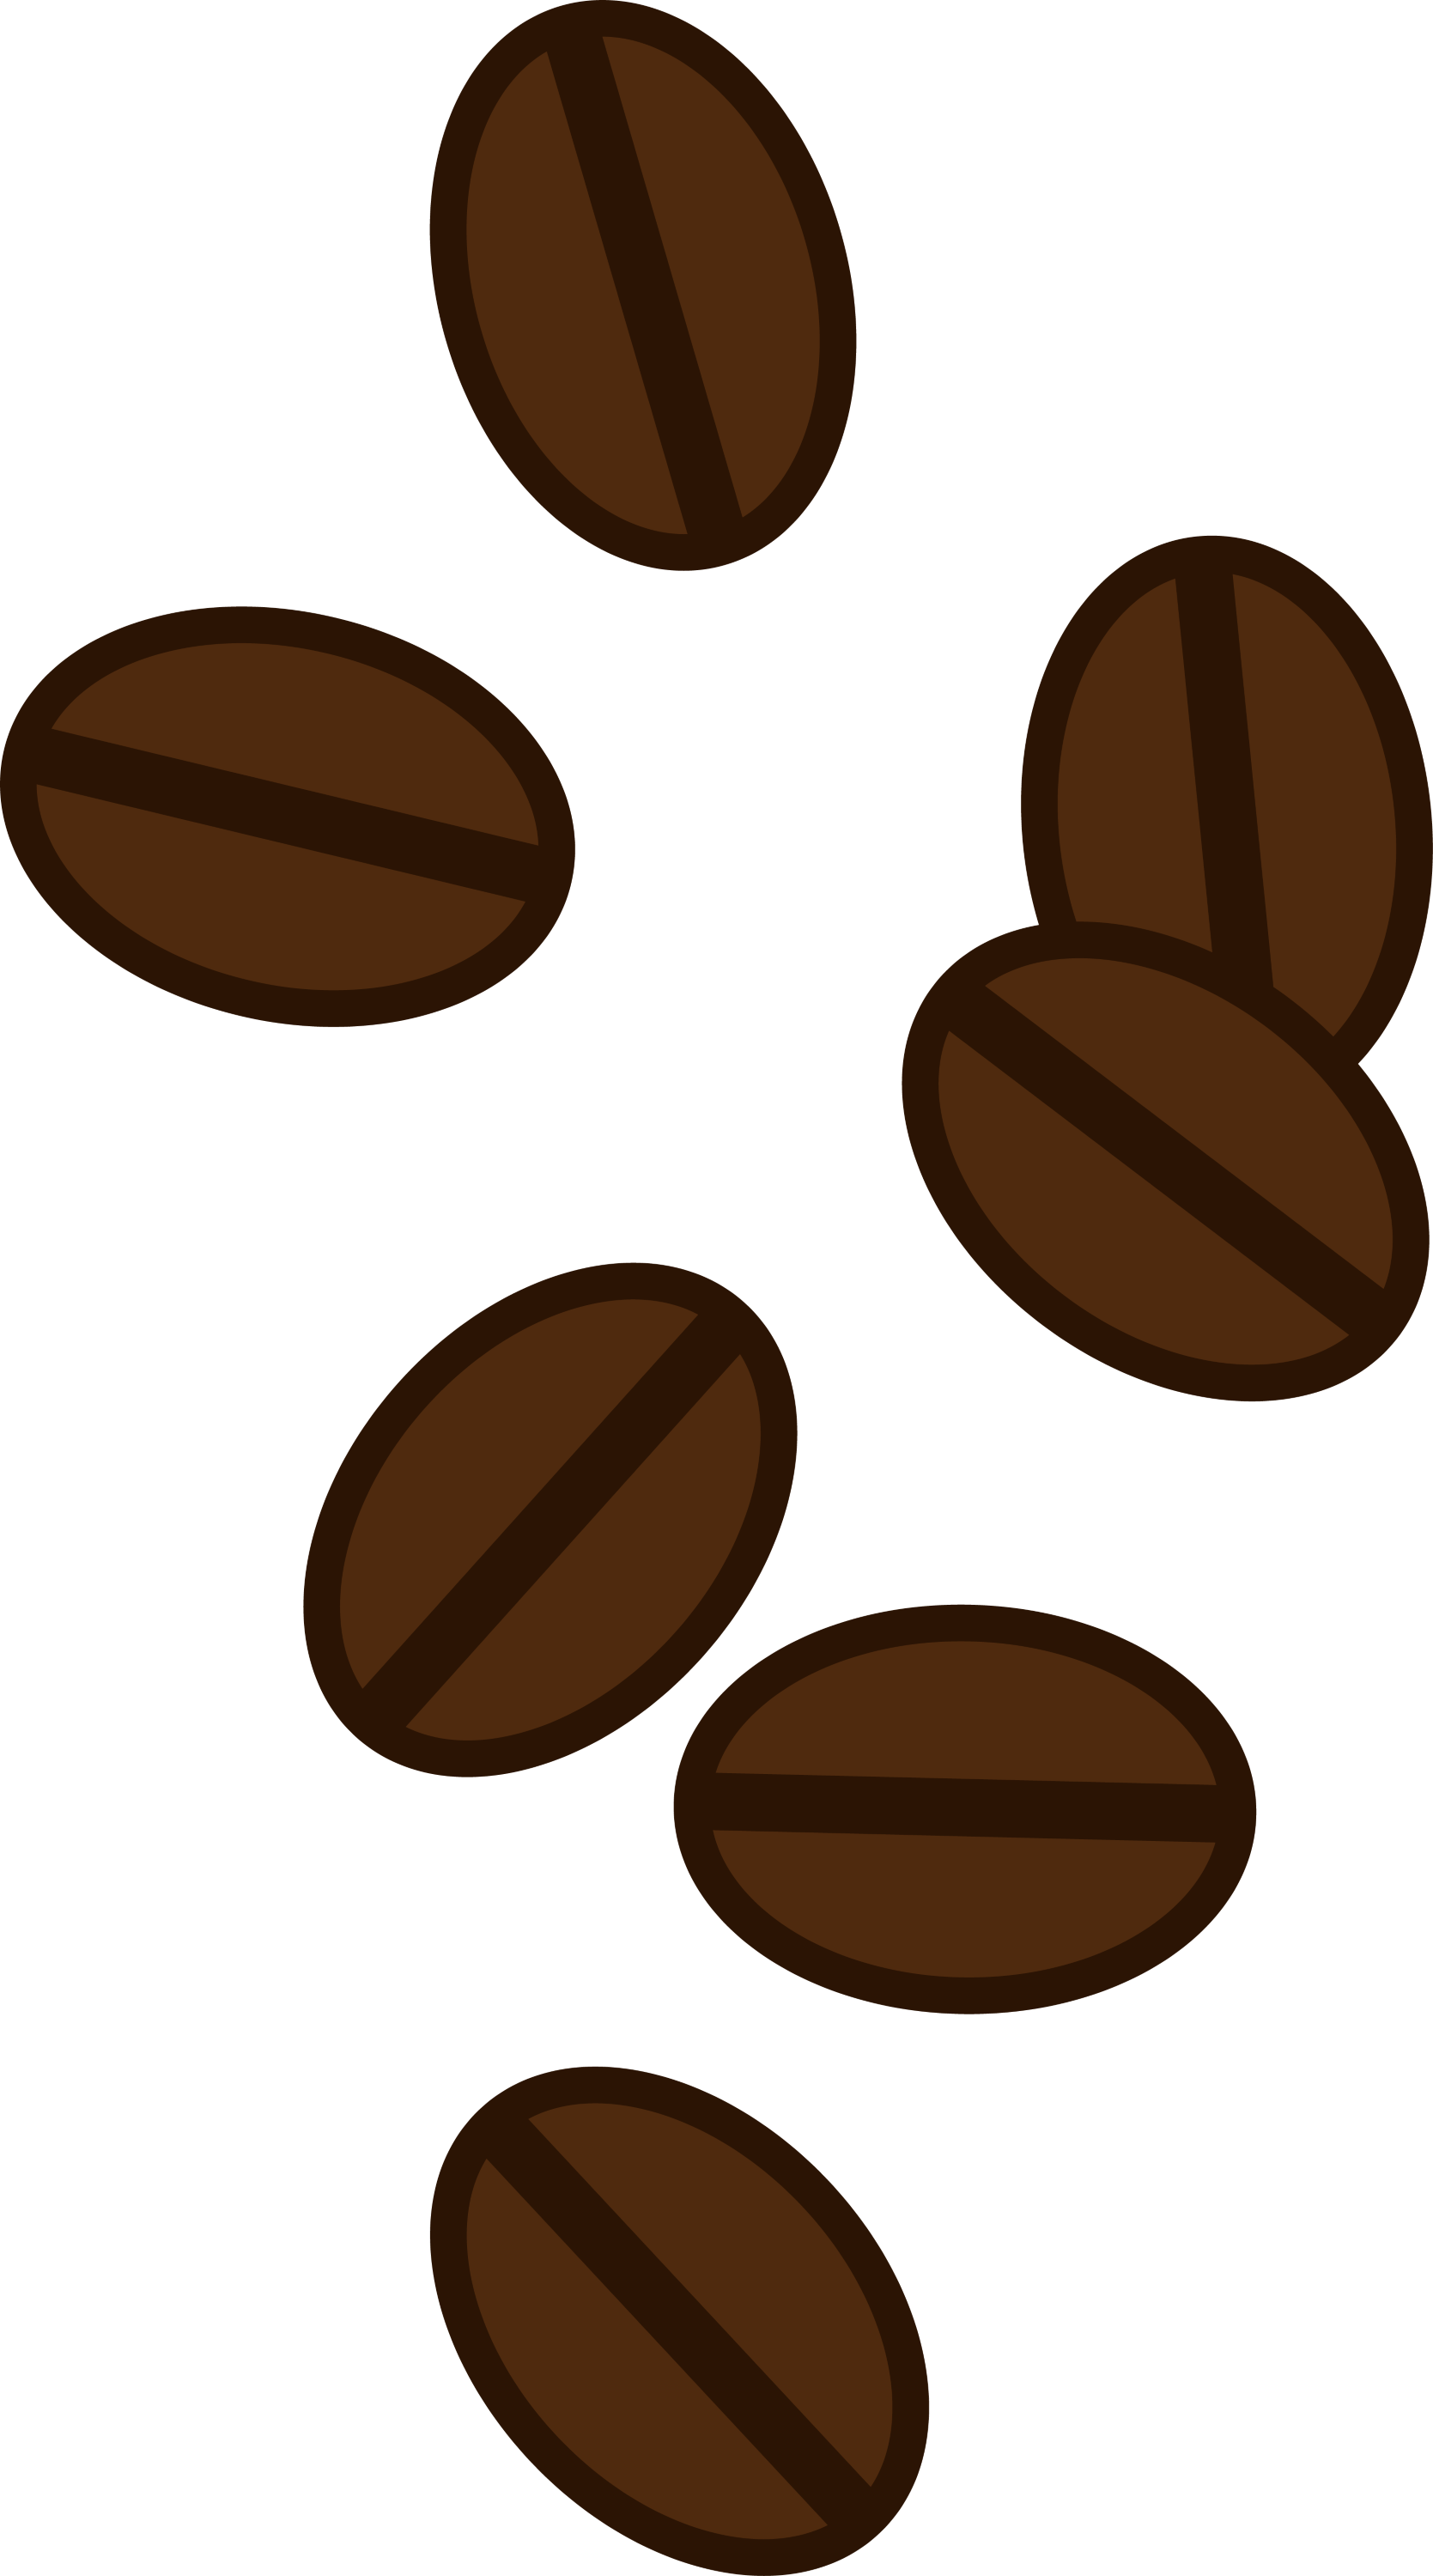 Coffee Beans Clip Art - Free Clip Art